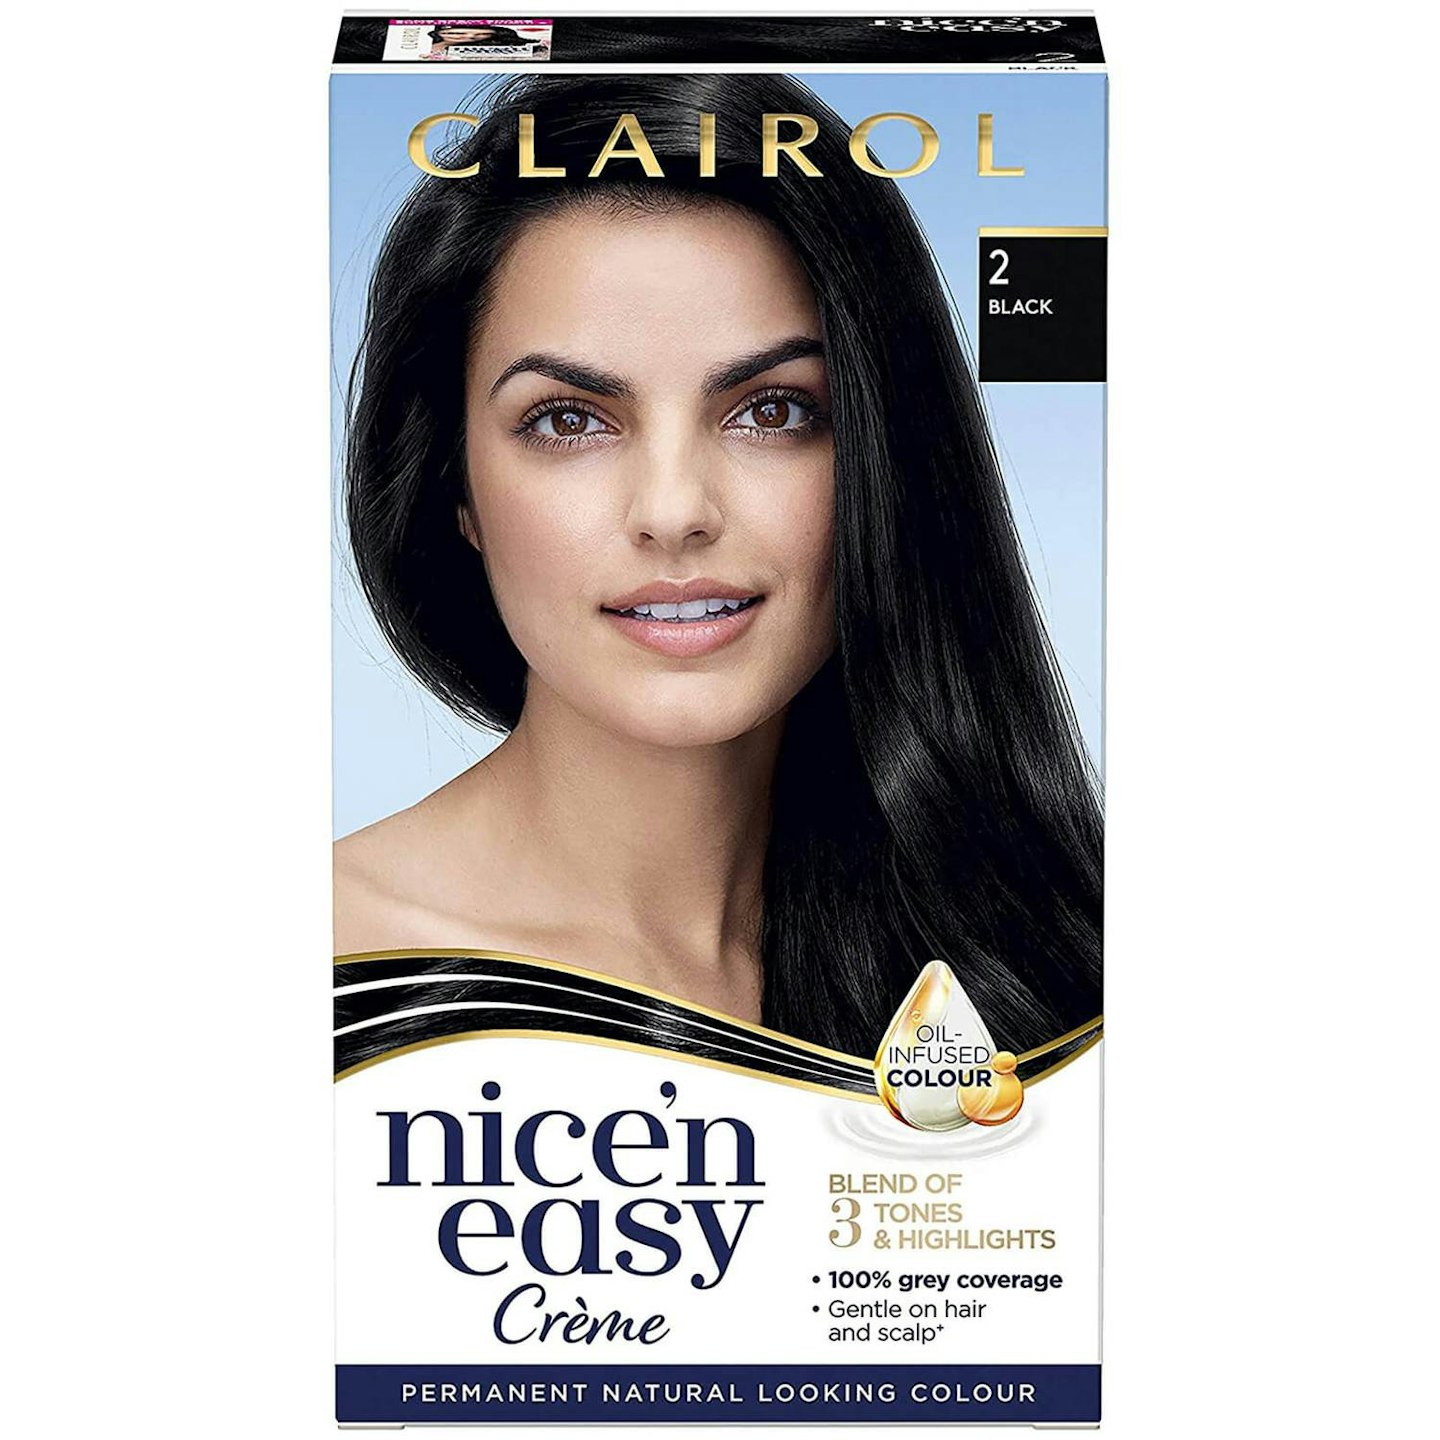 Clairol Nice' n Easy Cru00e8me Natural Looking Oil Infused Permanent Hair Dye in 2 Black